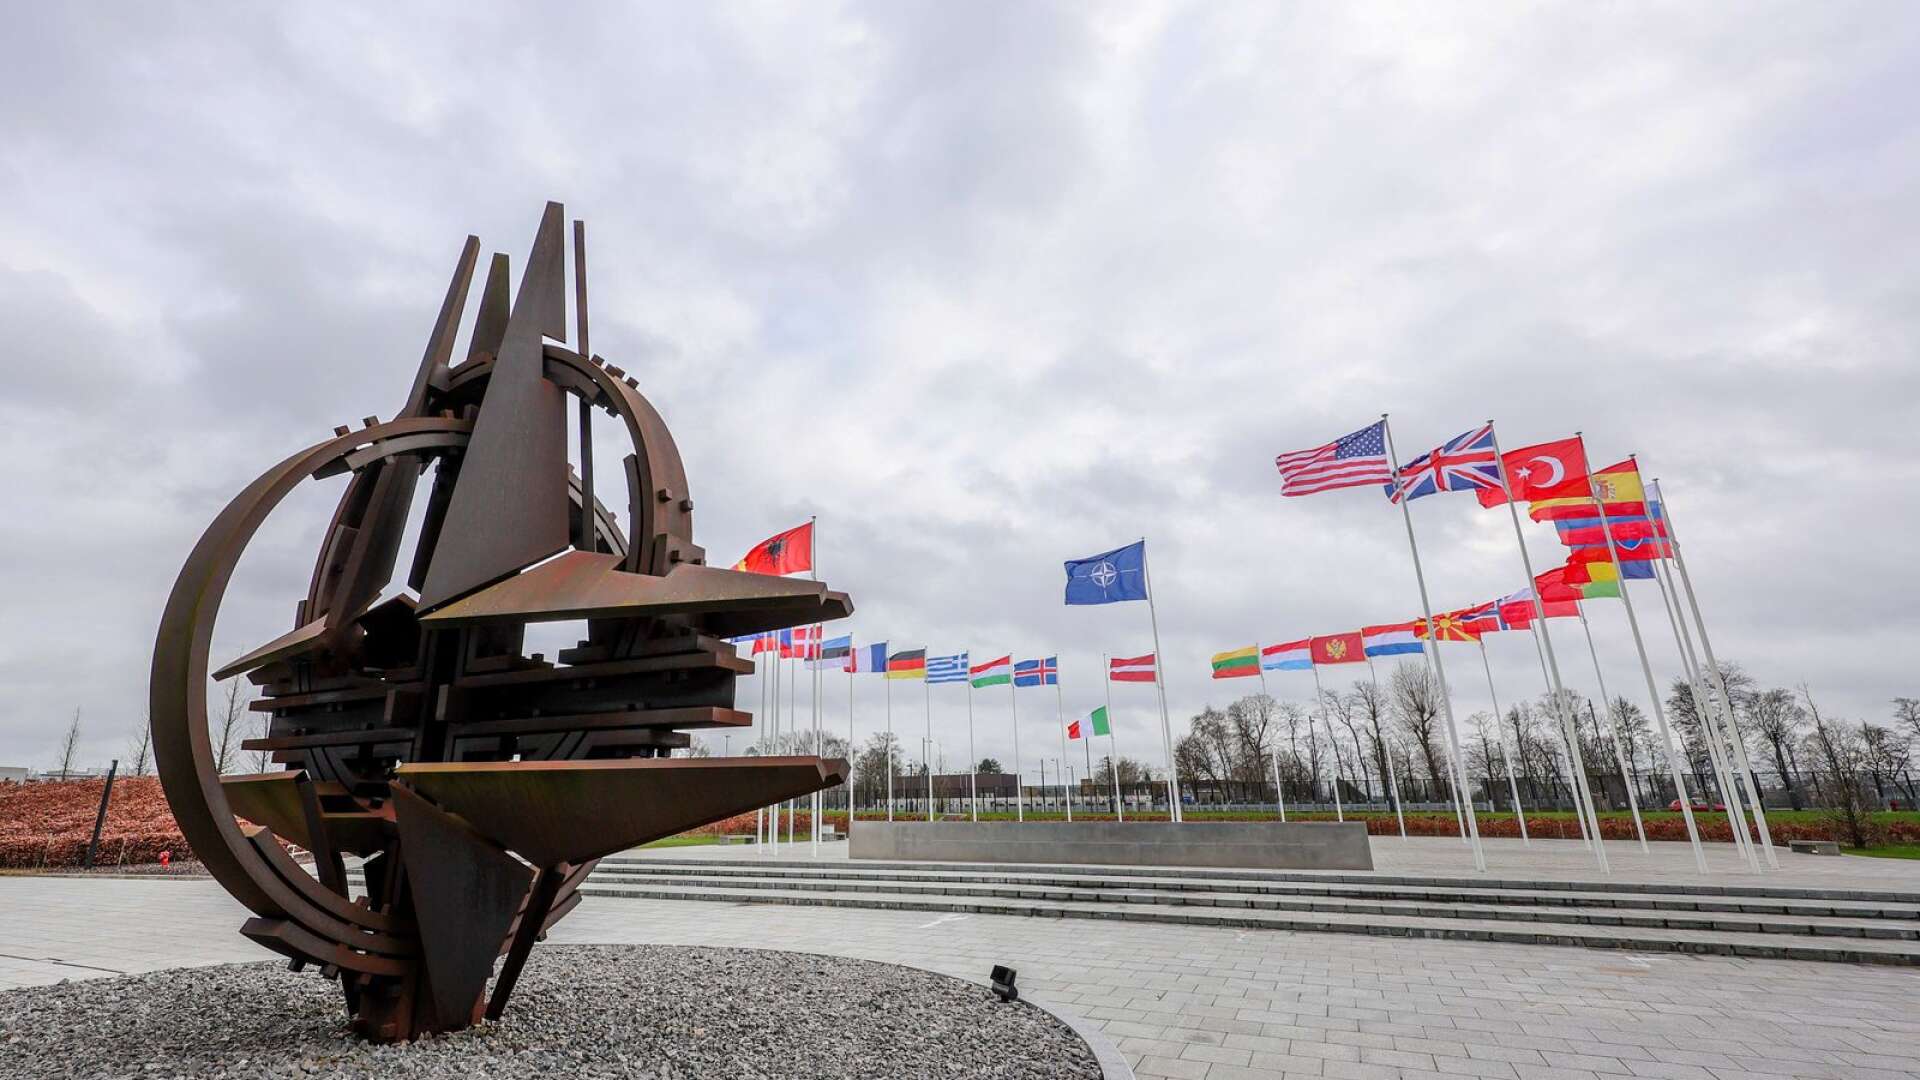 Artikel 5 i Atlantpakten, som ligger till grund för Natosamarbetet, innebär att medlemsländerna ger ömsesidiga säkerhetsgarantier vid anfall utifrån, skriver Allan Widman och Arman Teimouri.